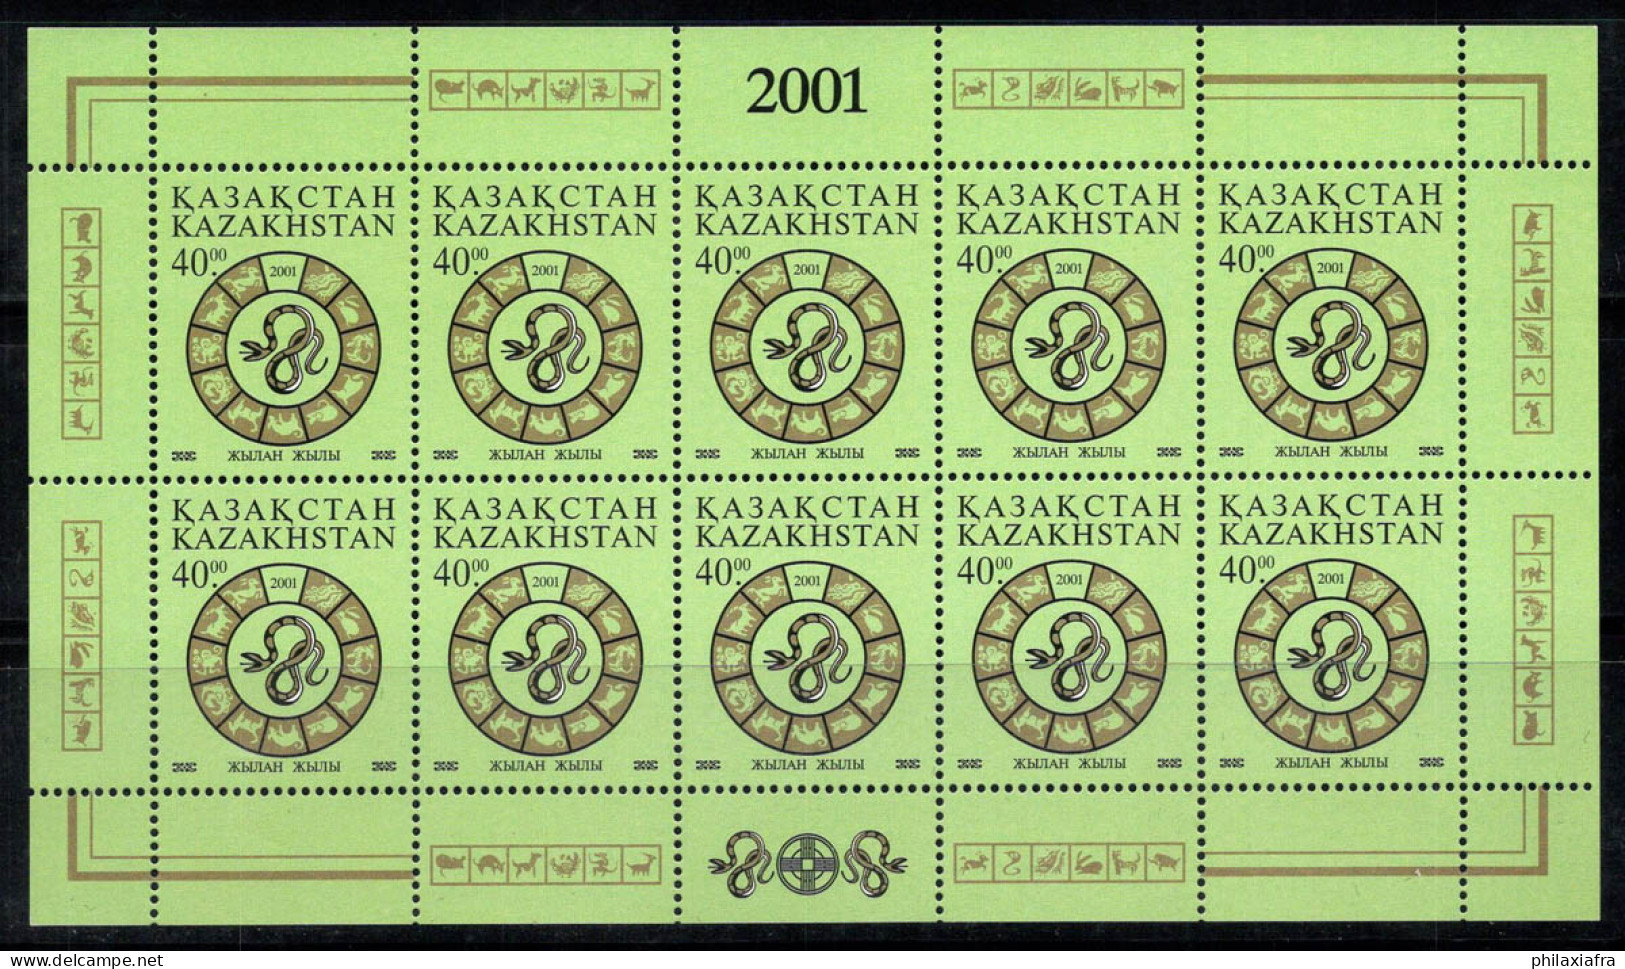 Kazakhstan 2001 Mi. 310 Mini Feuille 100% Neuf ** Nouvel An, 40 T - Kazakhstan